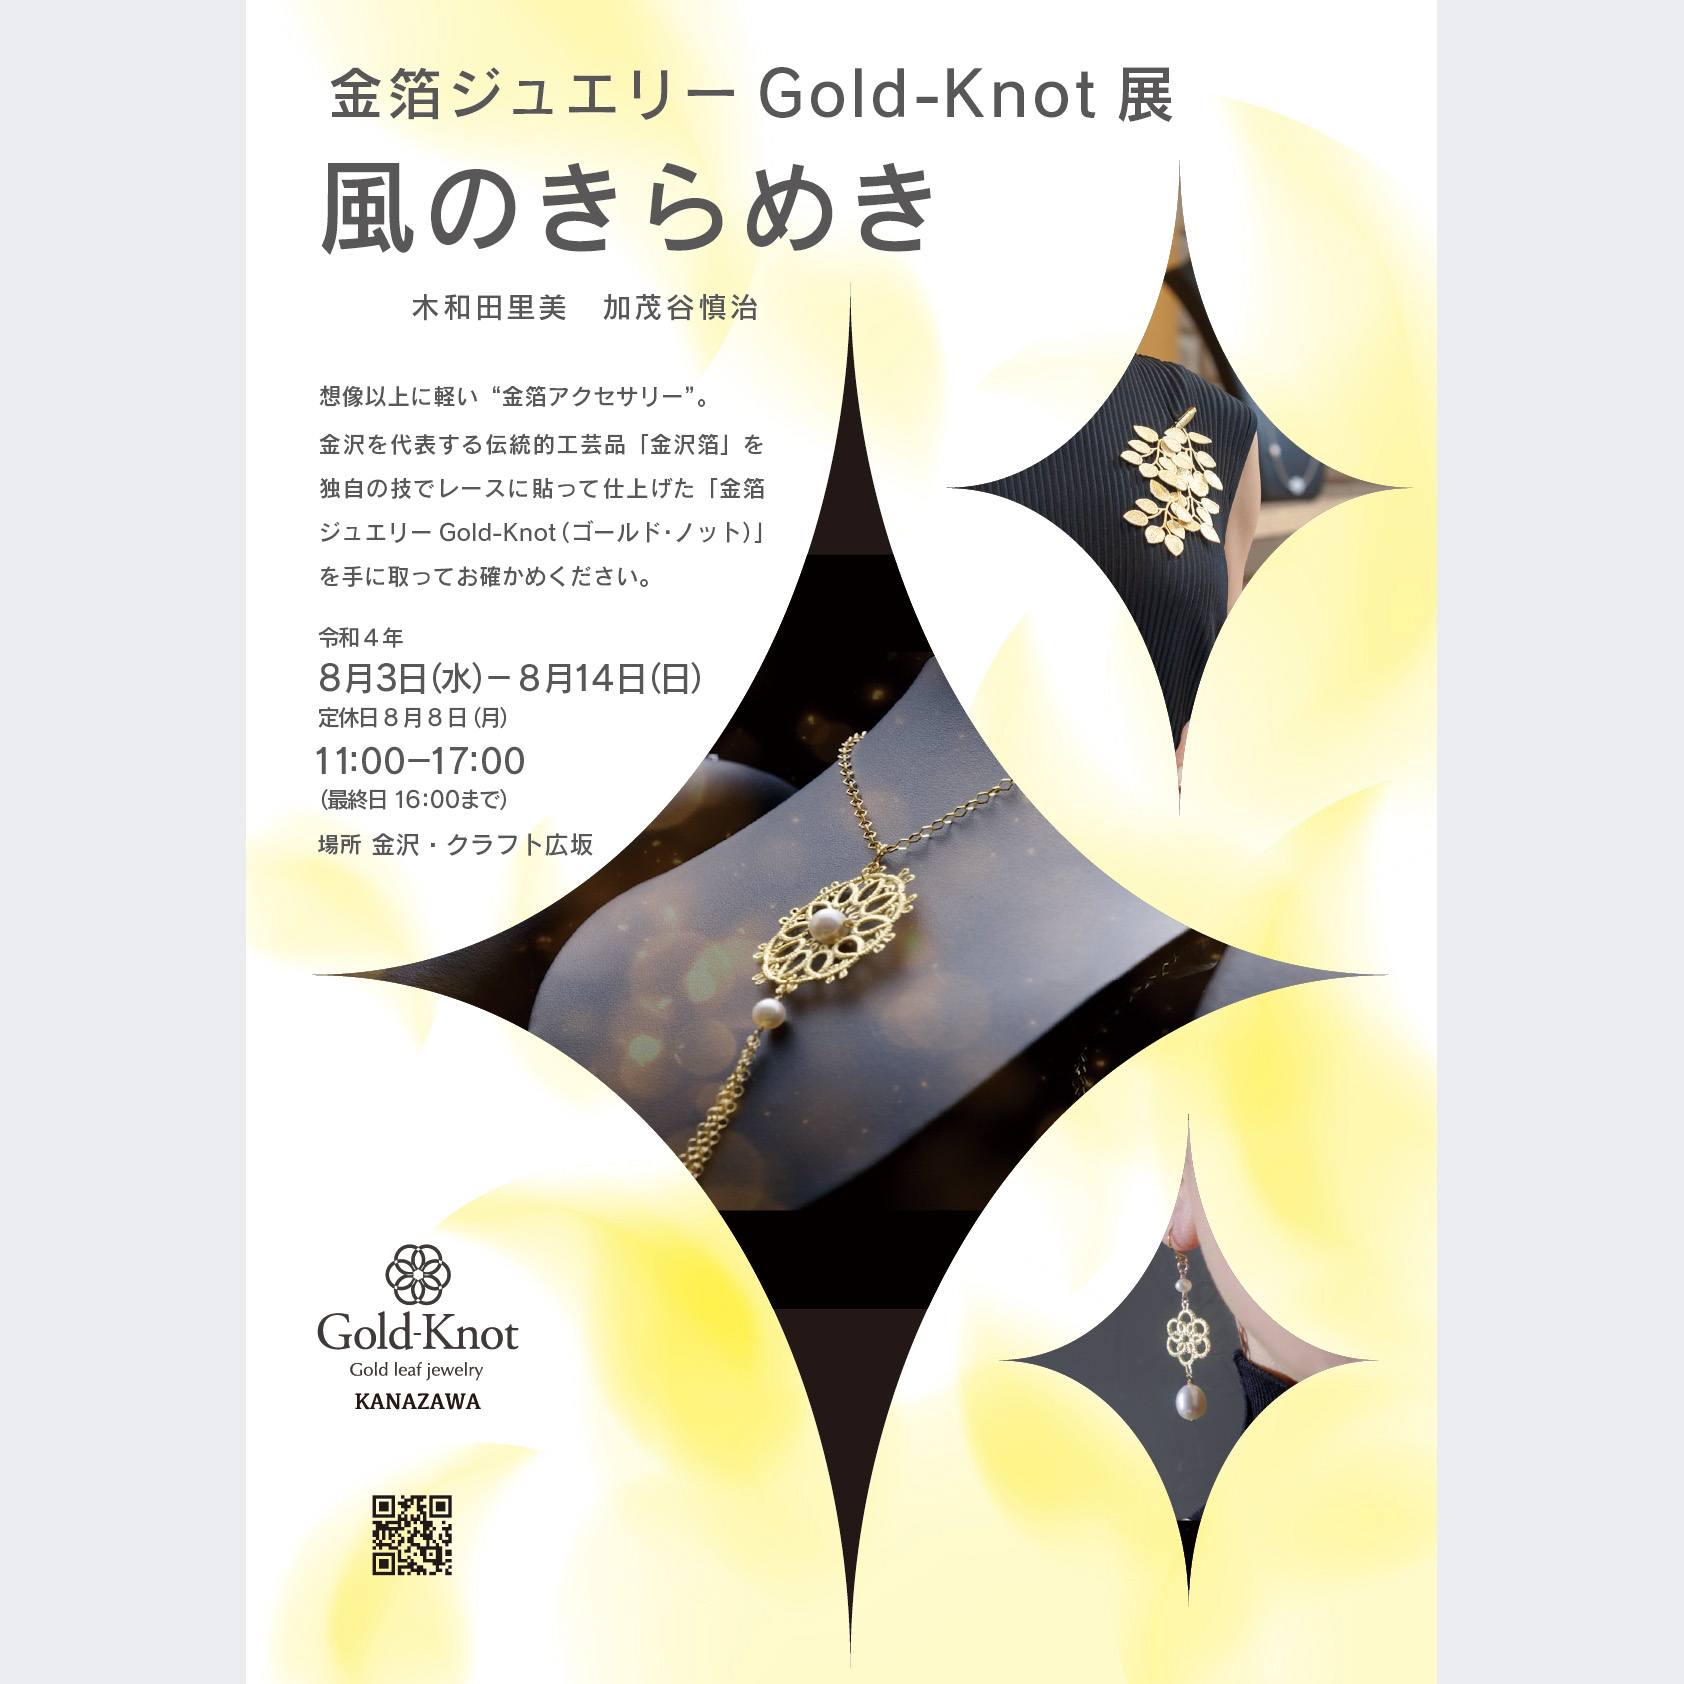 風のきらめGold-Knot展、開催します！金沢クラフト広坂